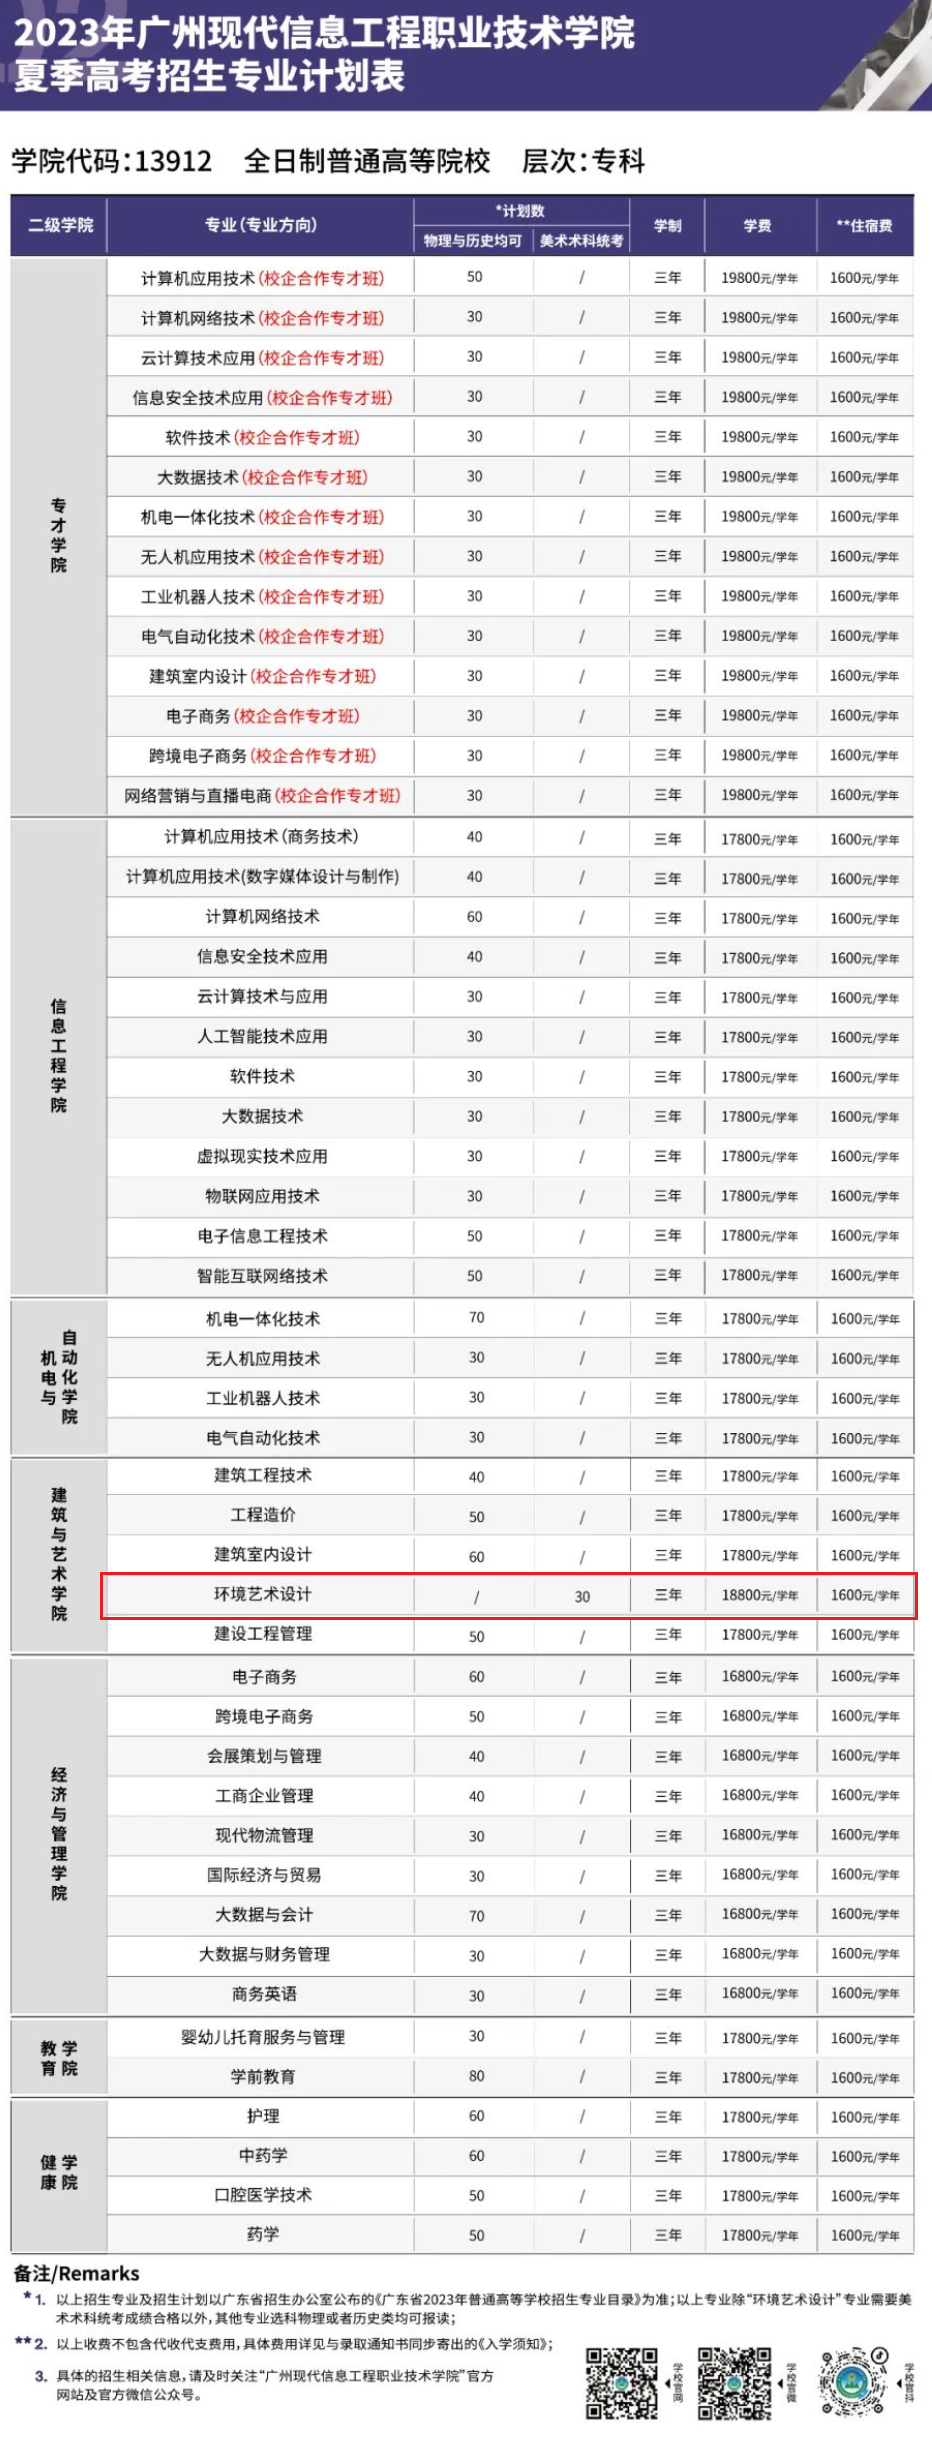 广州现代信息工程职业技术学院艺术类招生计划-各专业招生人数是多少